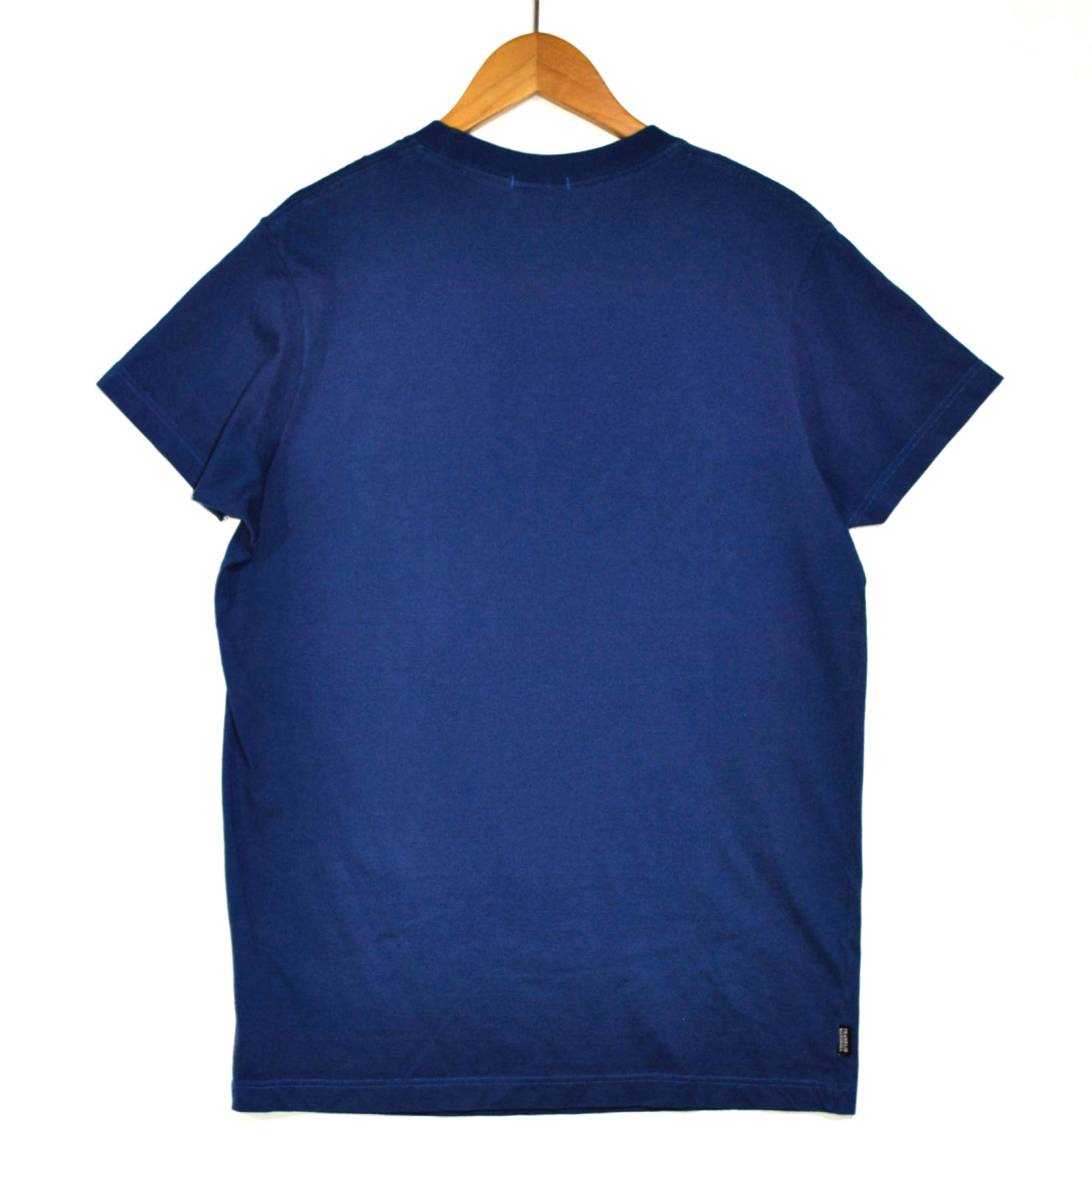 即決【FRANKLIN MARSHAL】フランクリンマーシャル プリントTシャツ 青 S 古着の画像2